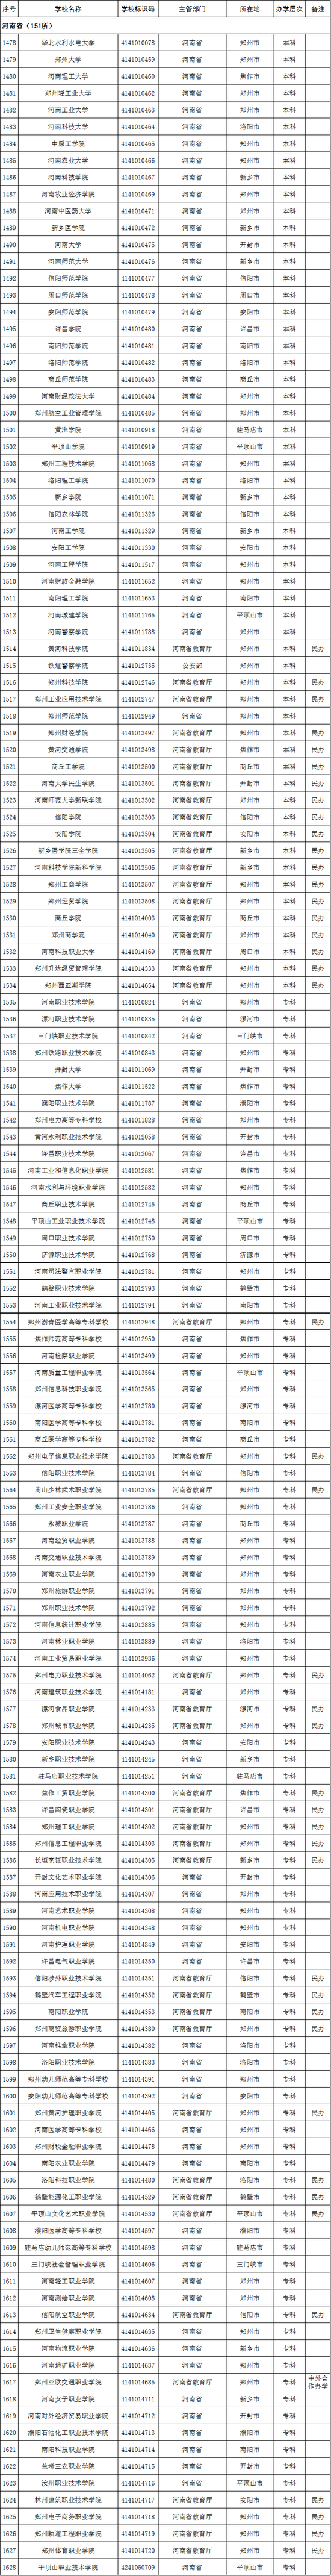 河南省2020年高校名单(151所)